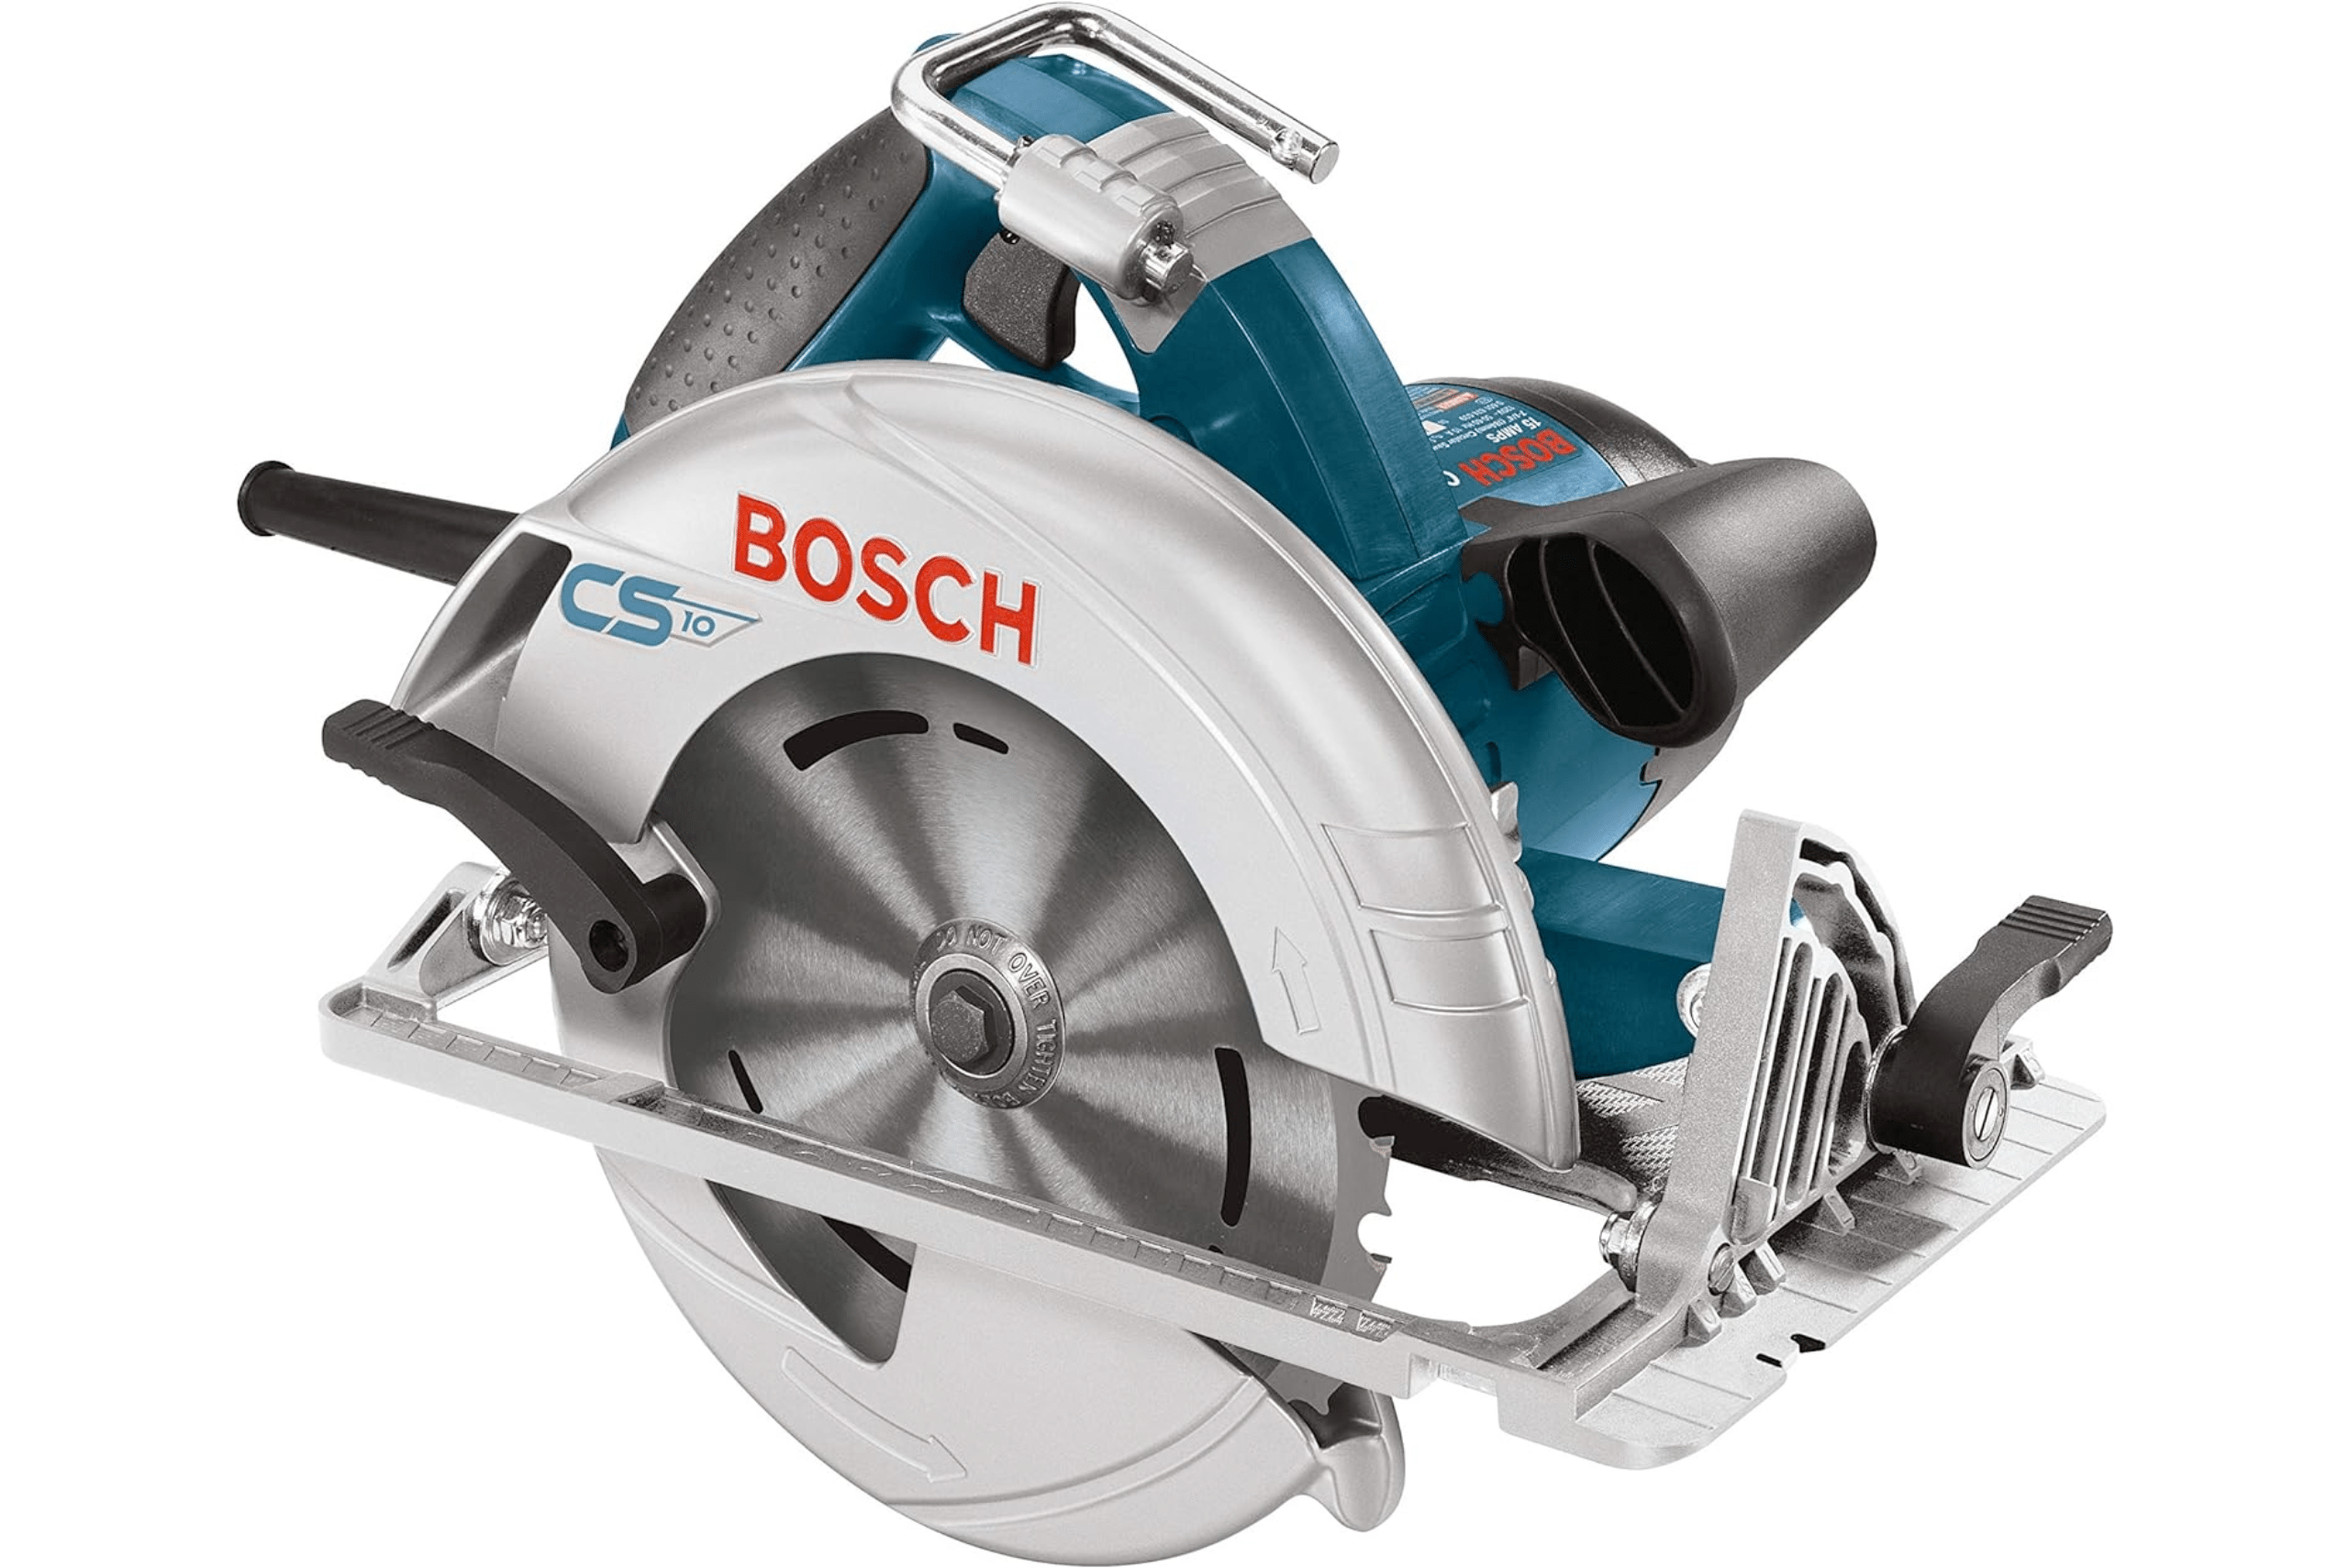 Bosch circular saw.